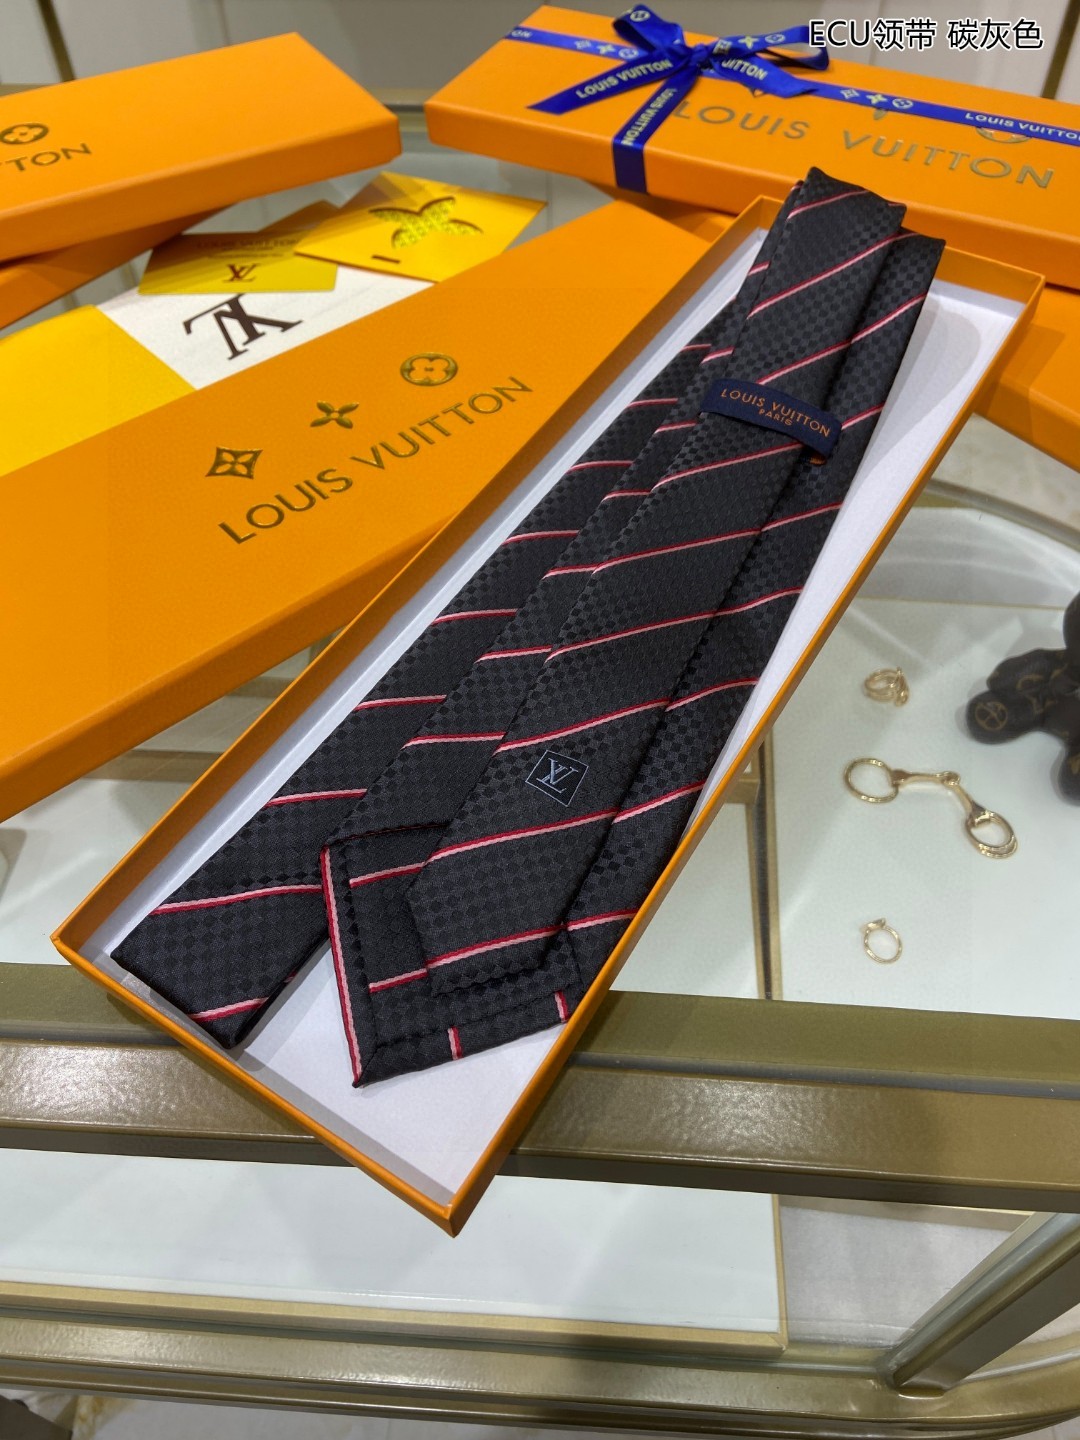 LV专柜同步出货啦️特价男士领带系列ECU领带稀有展现精湛手工与时尚优雅的理想选择这款光亮的真丝领带将两